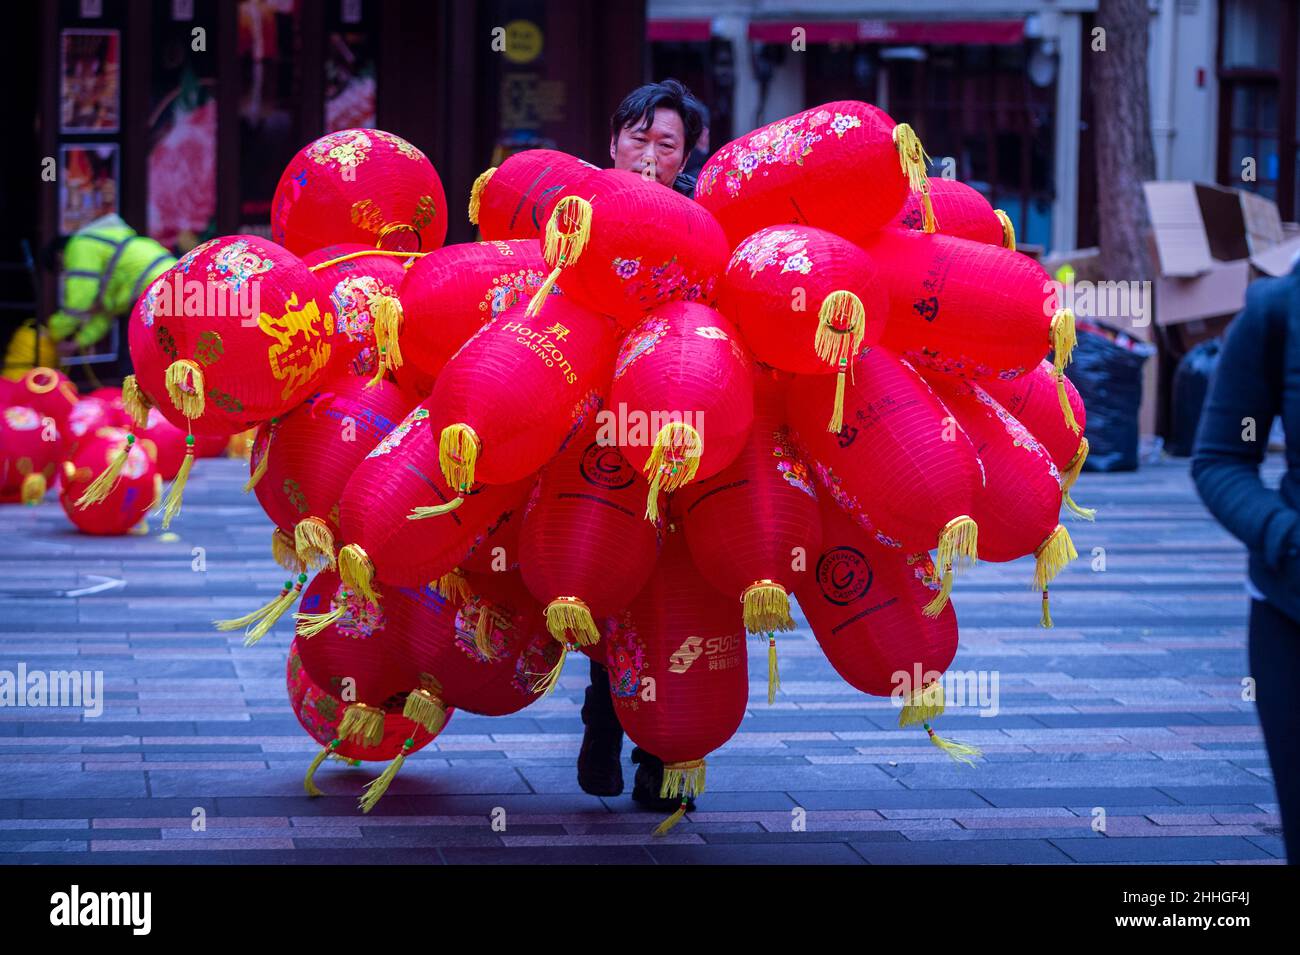 Londres, Royaume-Uni.24 janvier 2022.Un ouvrier porte des lanternes assemblées à Chinatown avant le nouvel an chinois et l'année du tigre commence officiellement le 1 février.Les festivités sur Chinatown sont réduites cette année à la pandémie.Credit: Stephen Chung / Alamy Live News Banque D'Images